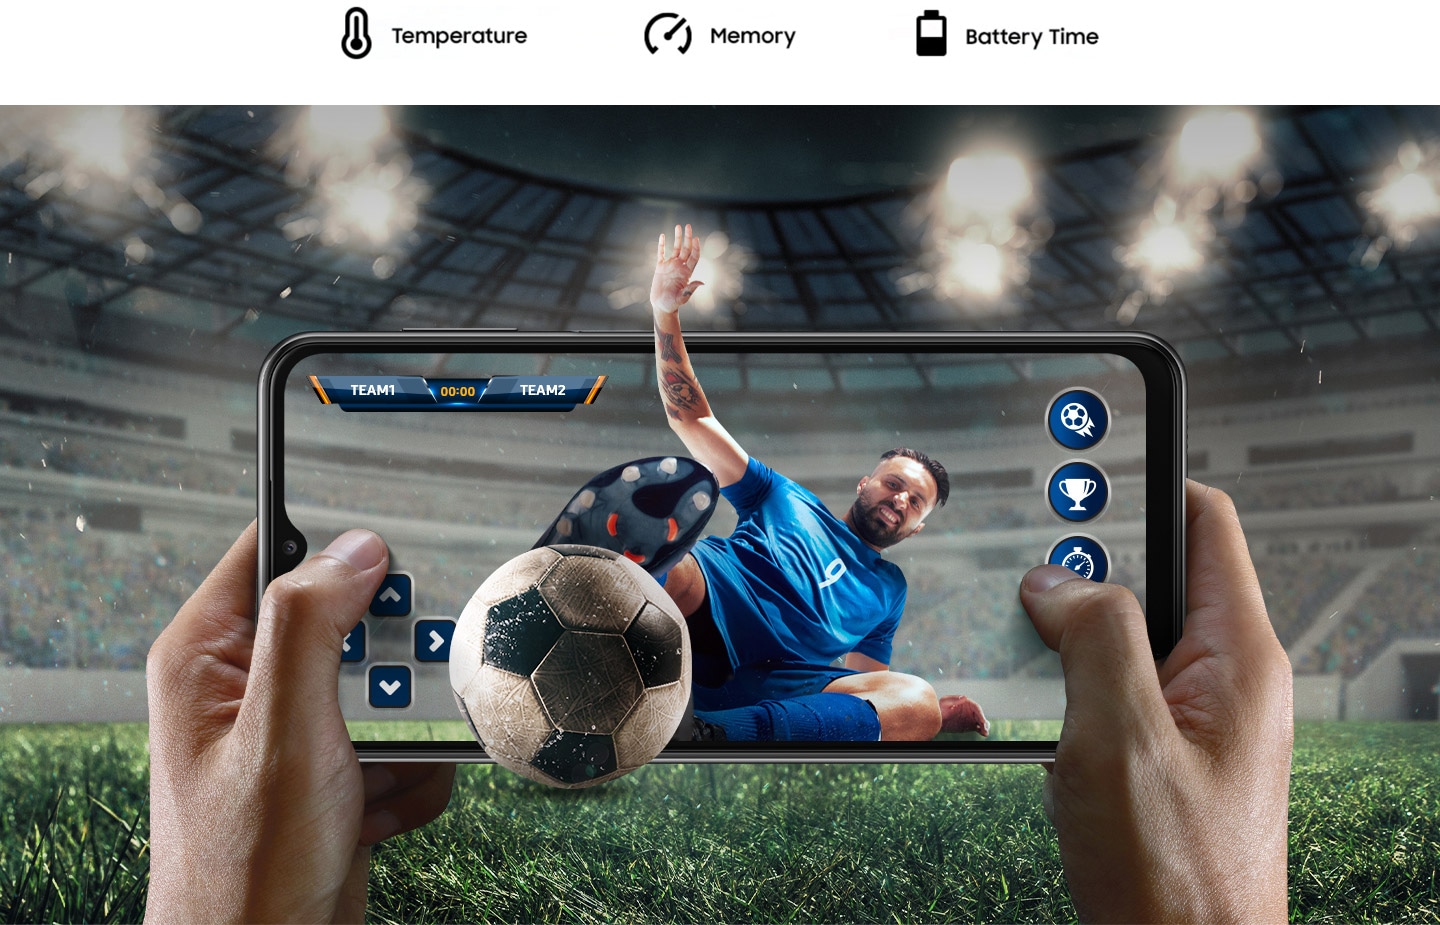 Dve ruke drže Galaxy A23 5G uređaj u pejzažnom režimu, igraju fudbalsku utakmicu. Pozadina prikazuje atmosferu stadiona u igri proširenu van ekrana. Iz unutrašnjosti ekrana, fudbaler skače prema fudbalskoj lopti i oba su malo izbočena van ekrana. Iznad, tekst glasi Temperatura, Memorija i Vreme baterije.